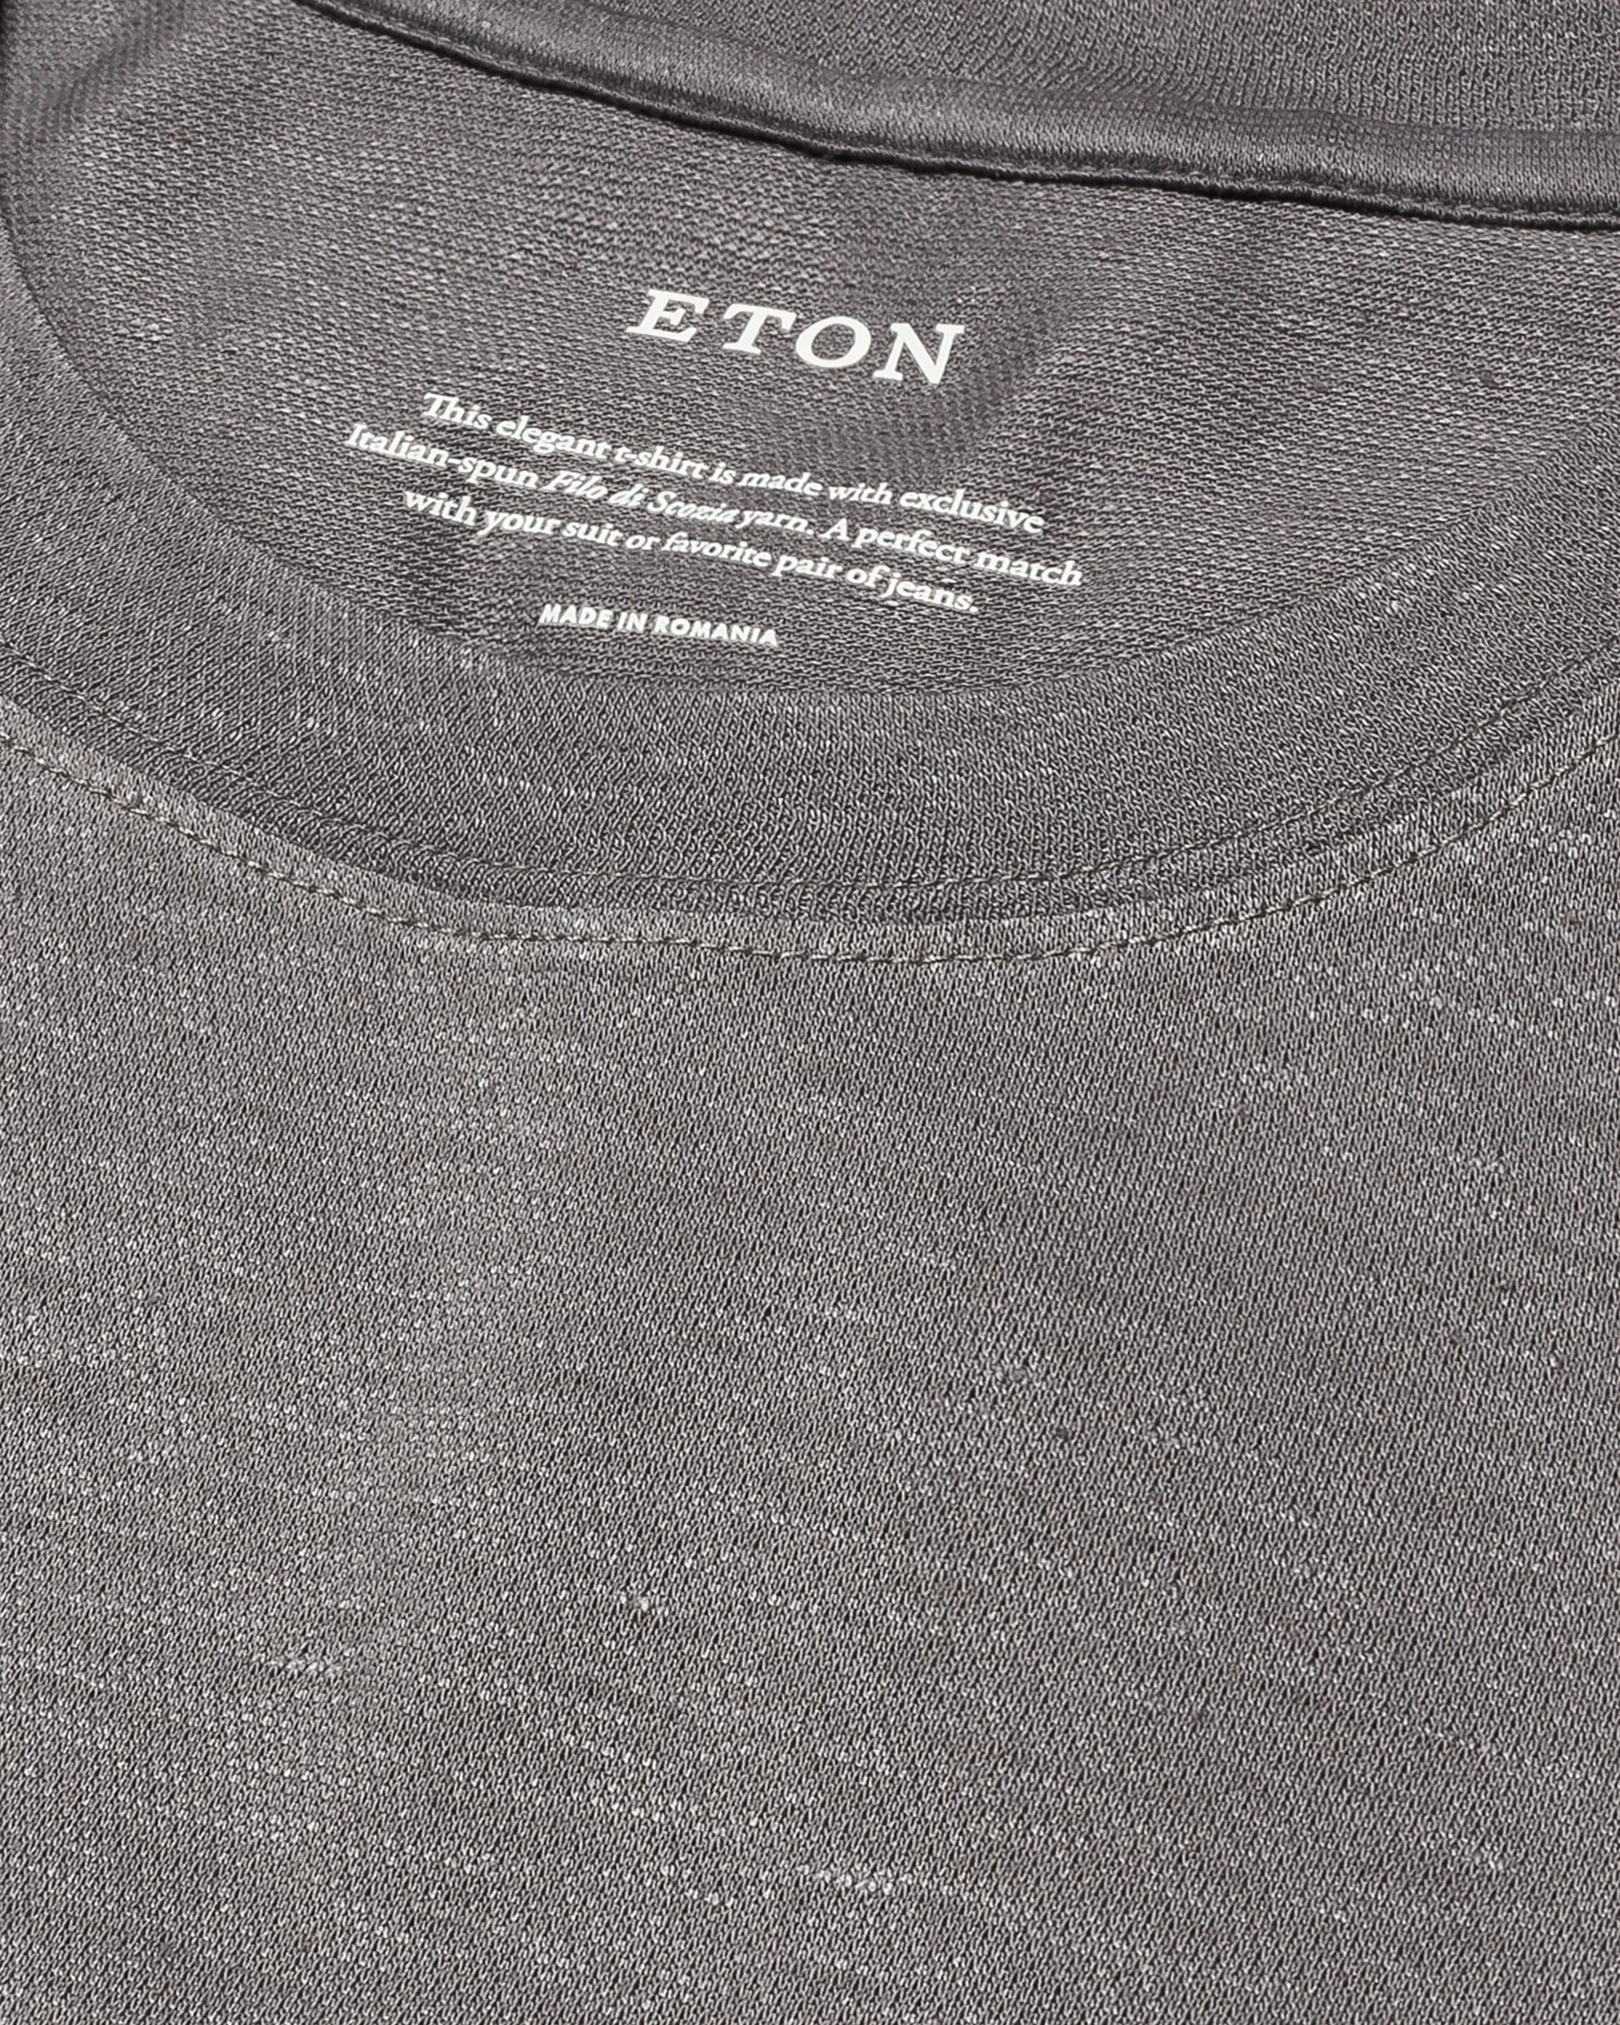 Eton - mid grey pique t shirt